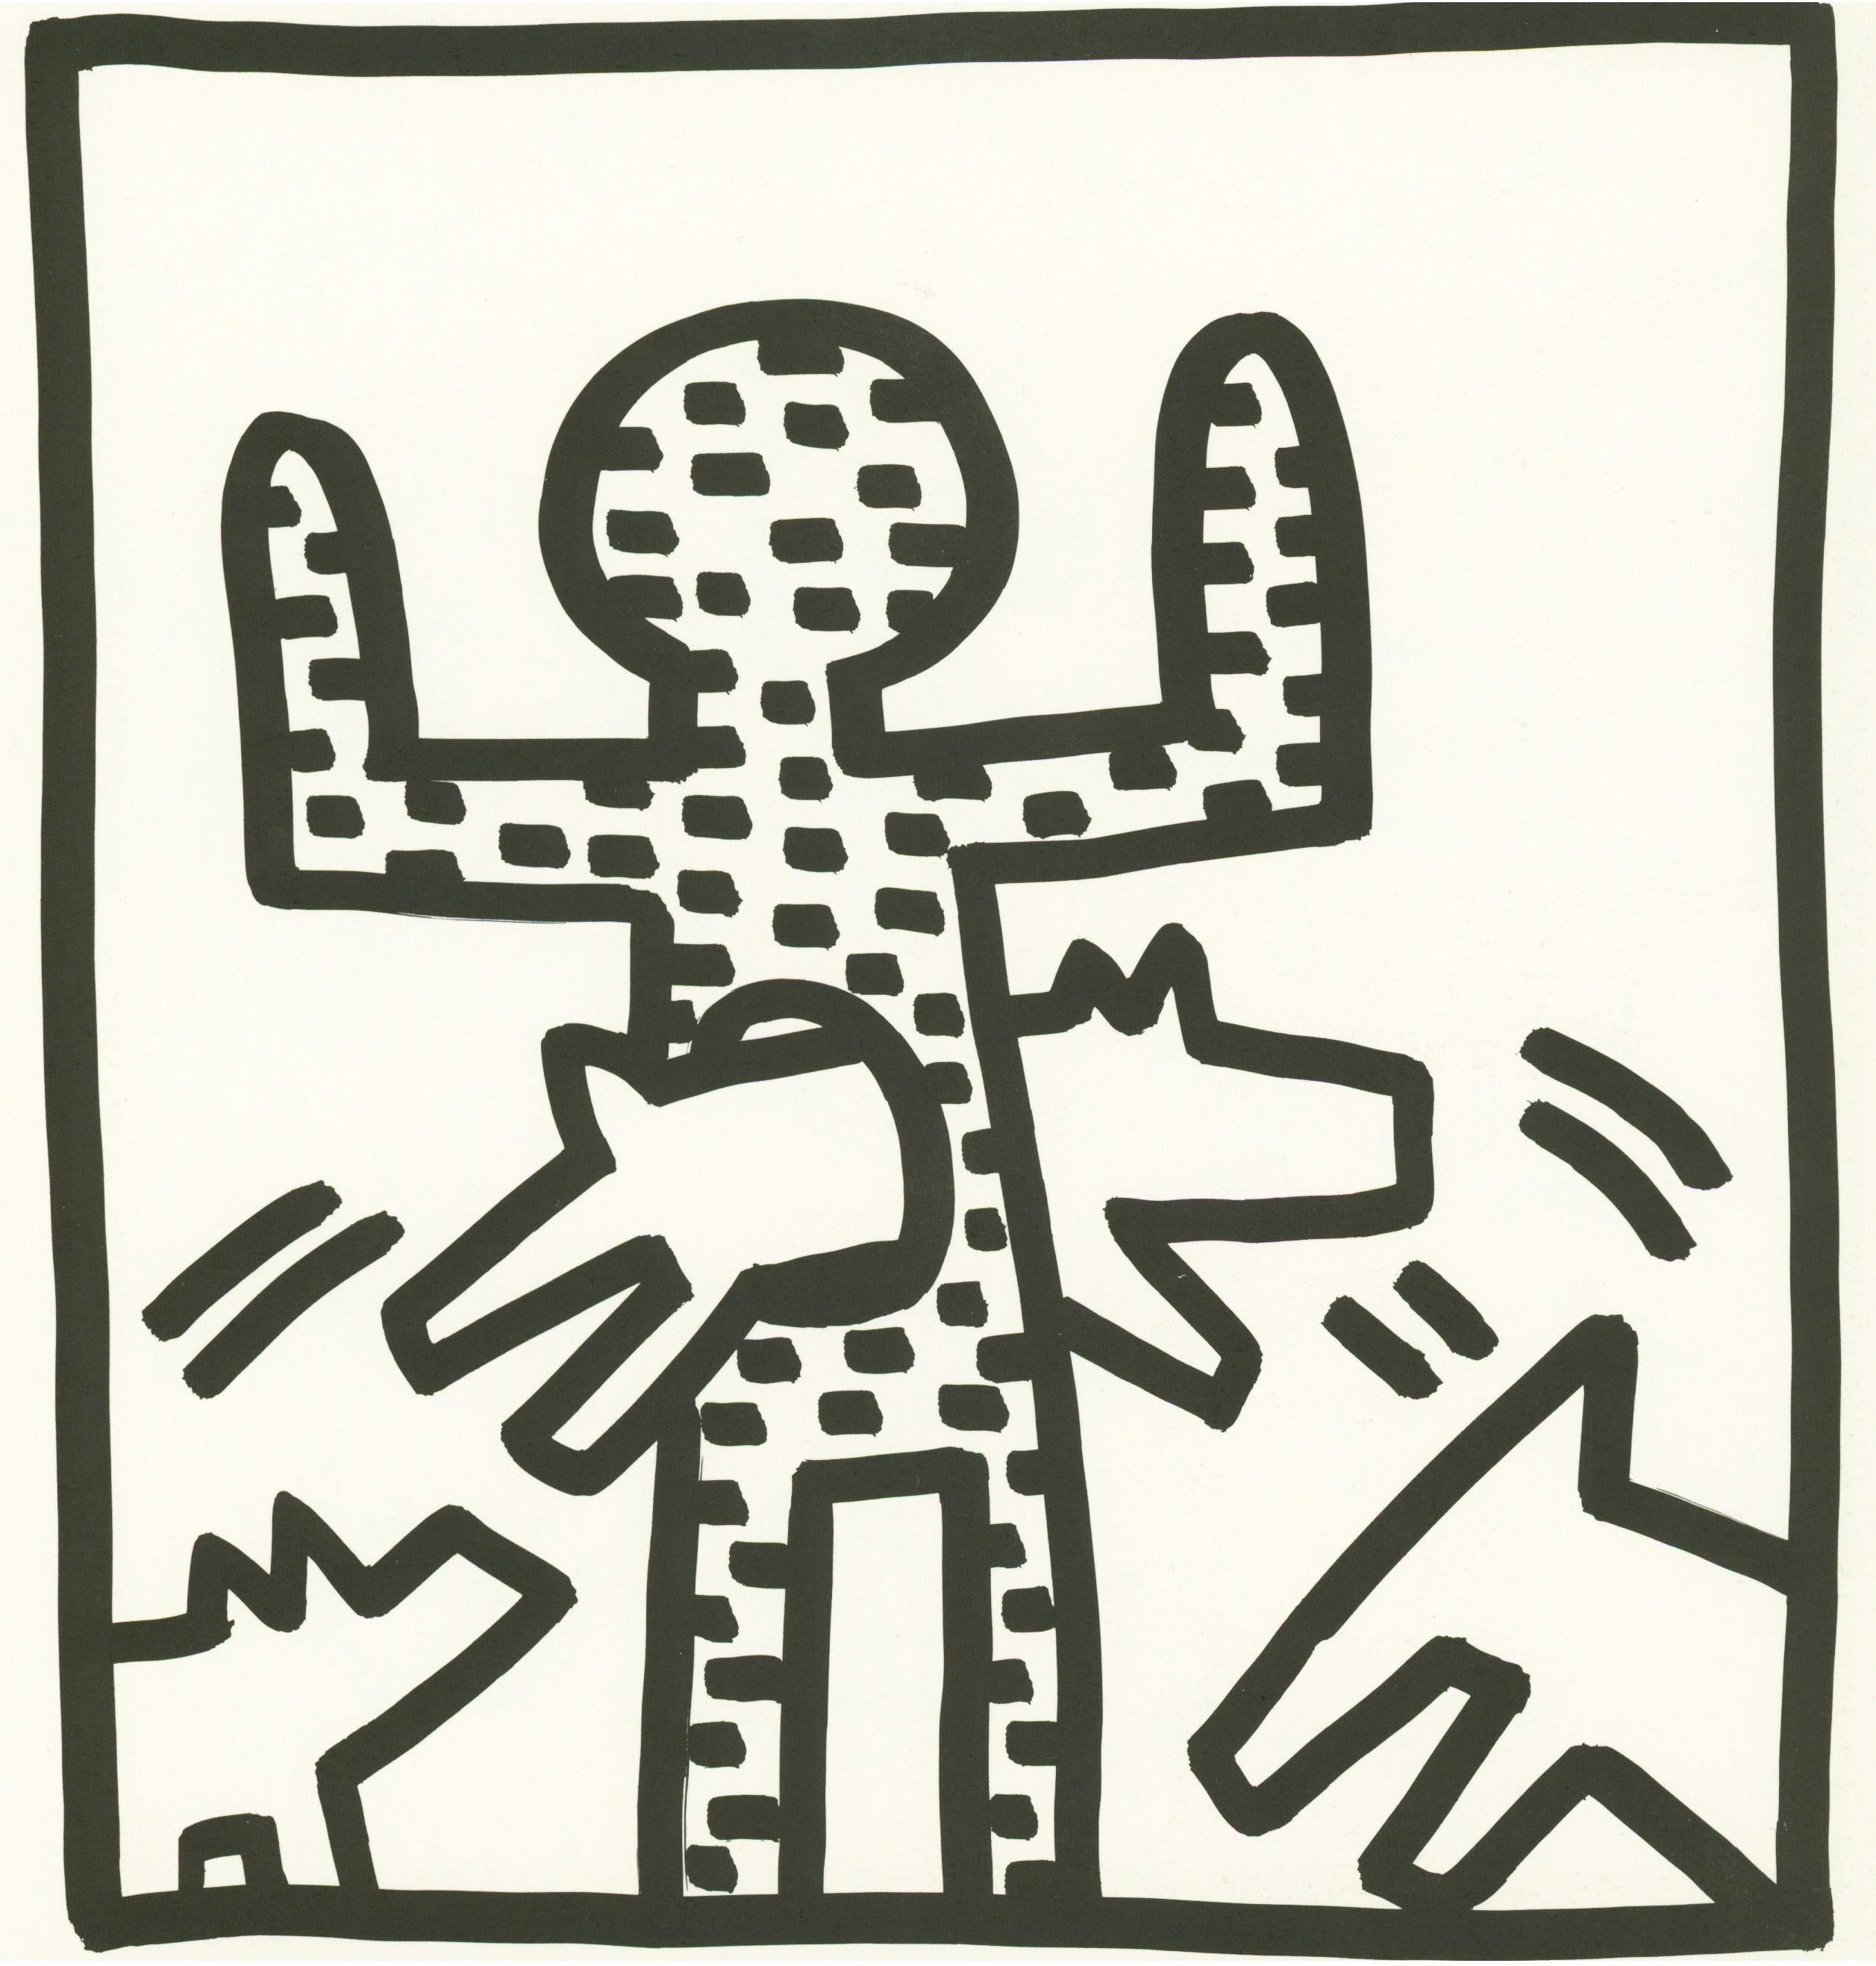 Keith Haring barking dog lithograph 1982 (Haring untitled barking dog) 